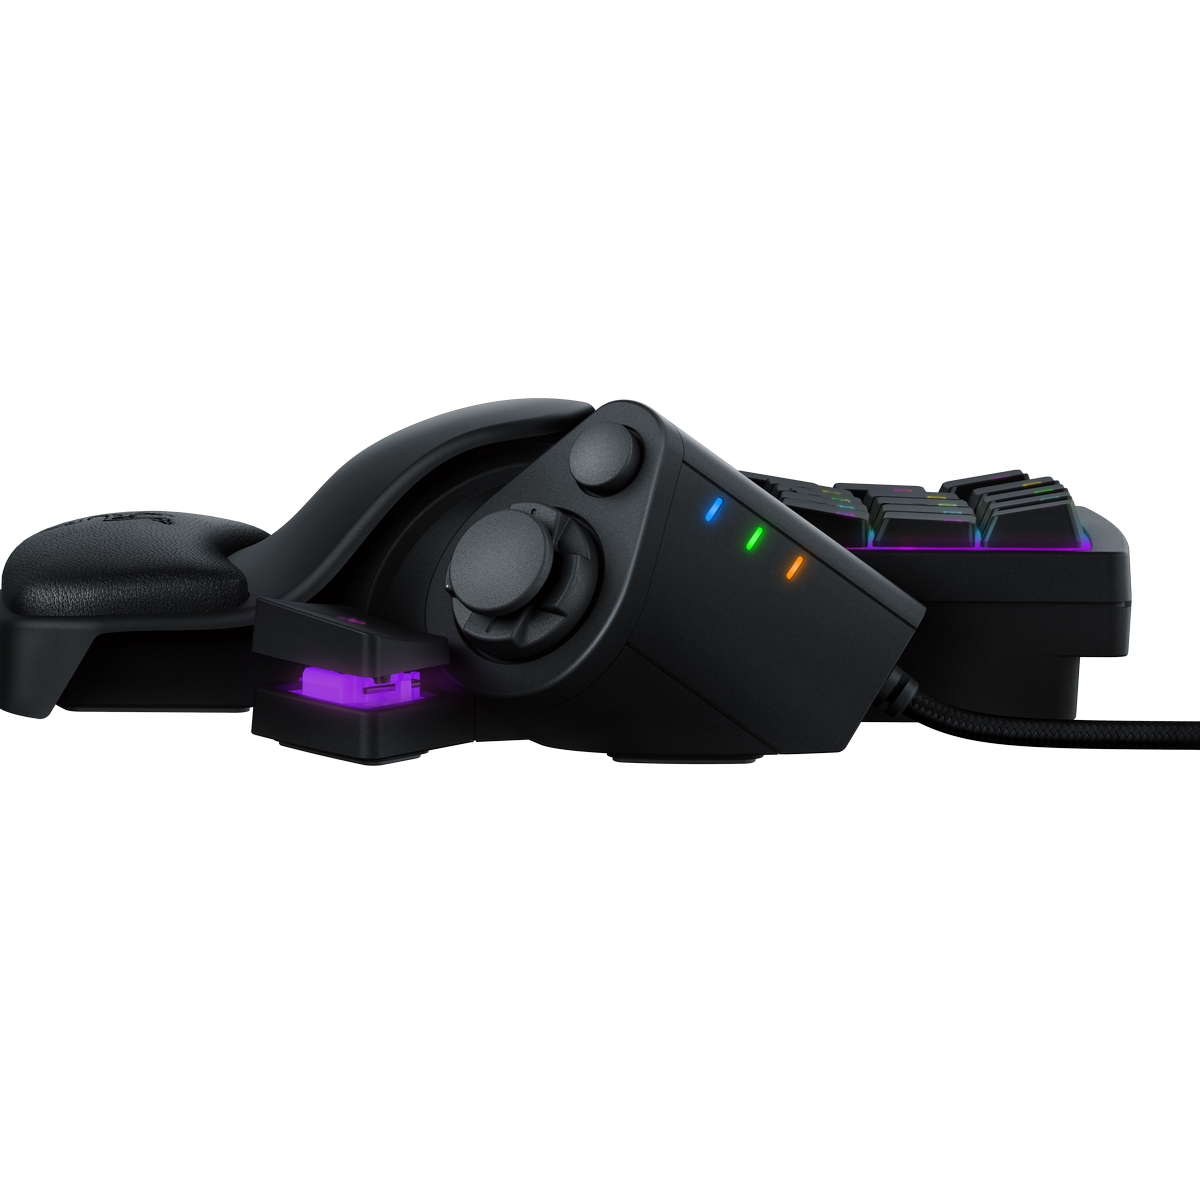 Razer - Razer Tartarus V2 - Chroma Expert RGB USB Gaming Keypad